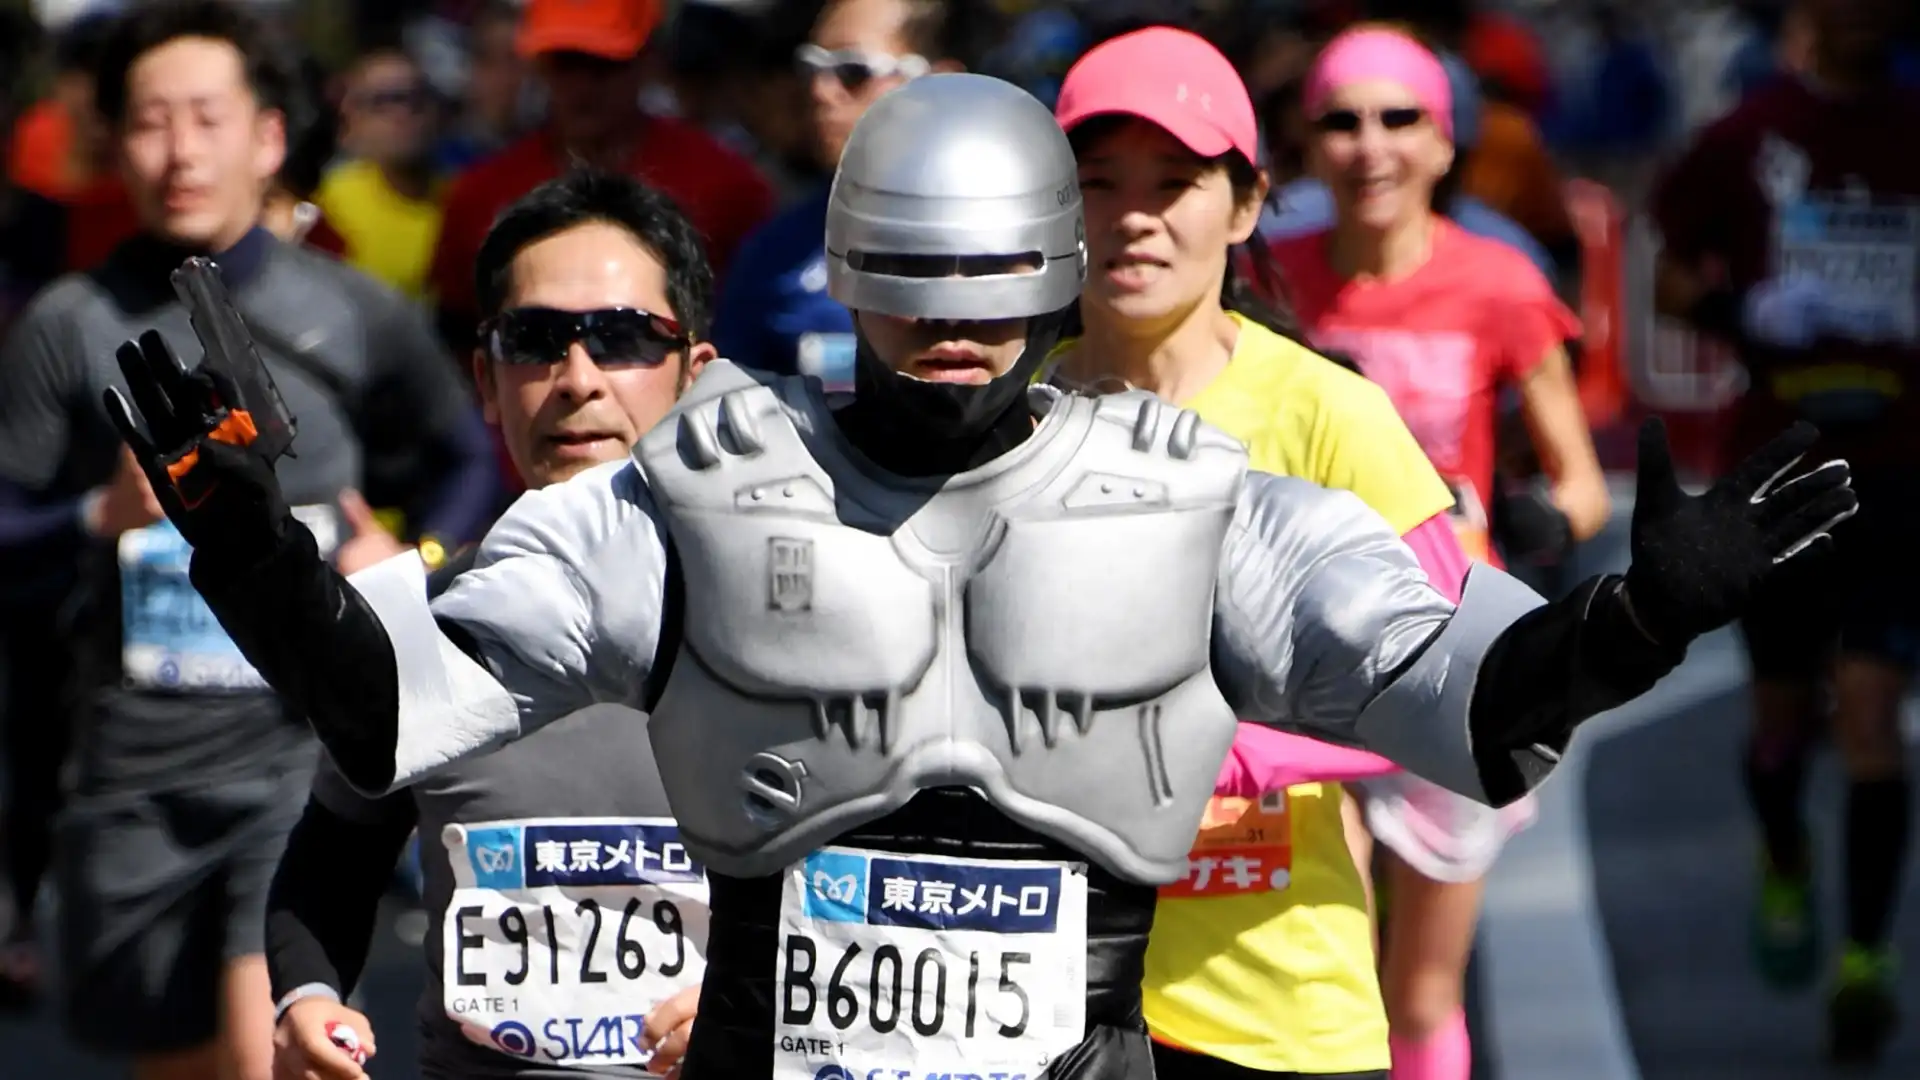 Si è tenuta anche quest'anno la tradizionale maratona di Tokyo